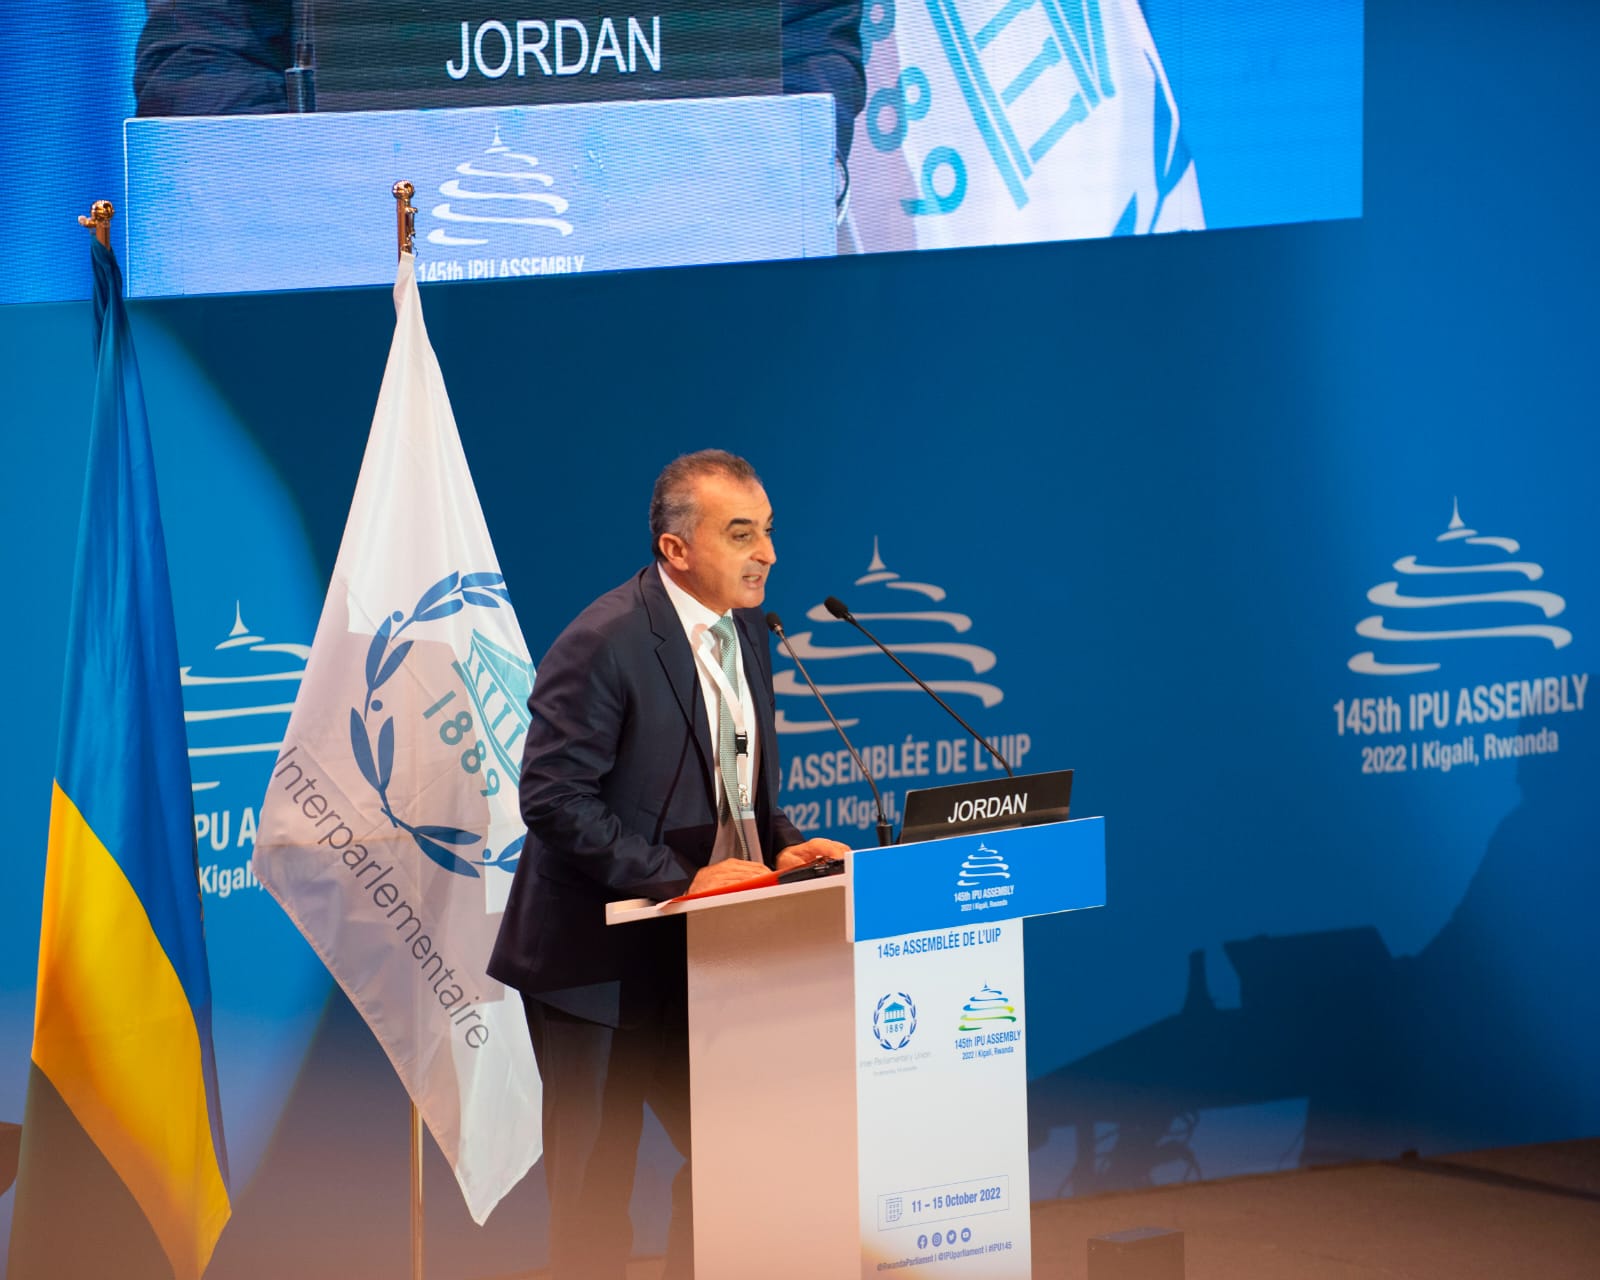 زيادين: الأردن يؤمن بأن المساواة حقٌ أساسي من حقوق الإنسان وضرورةً لتحقيق العدالة